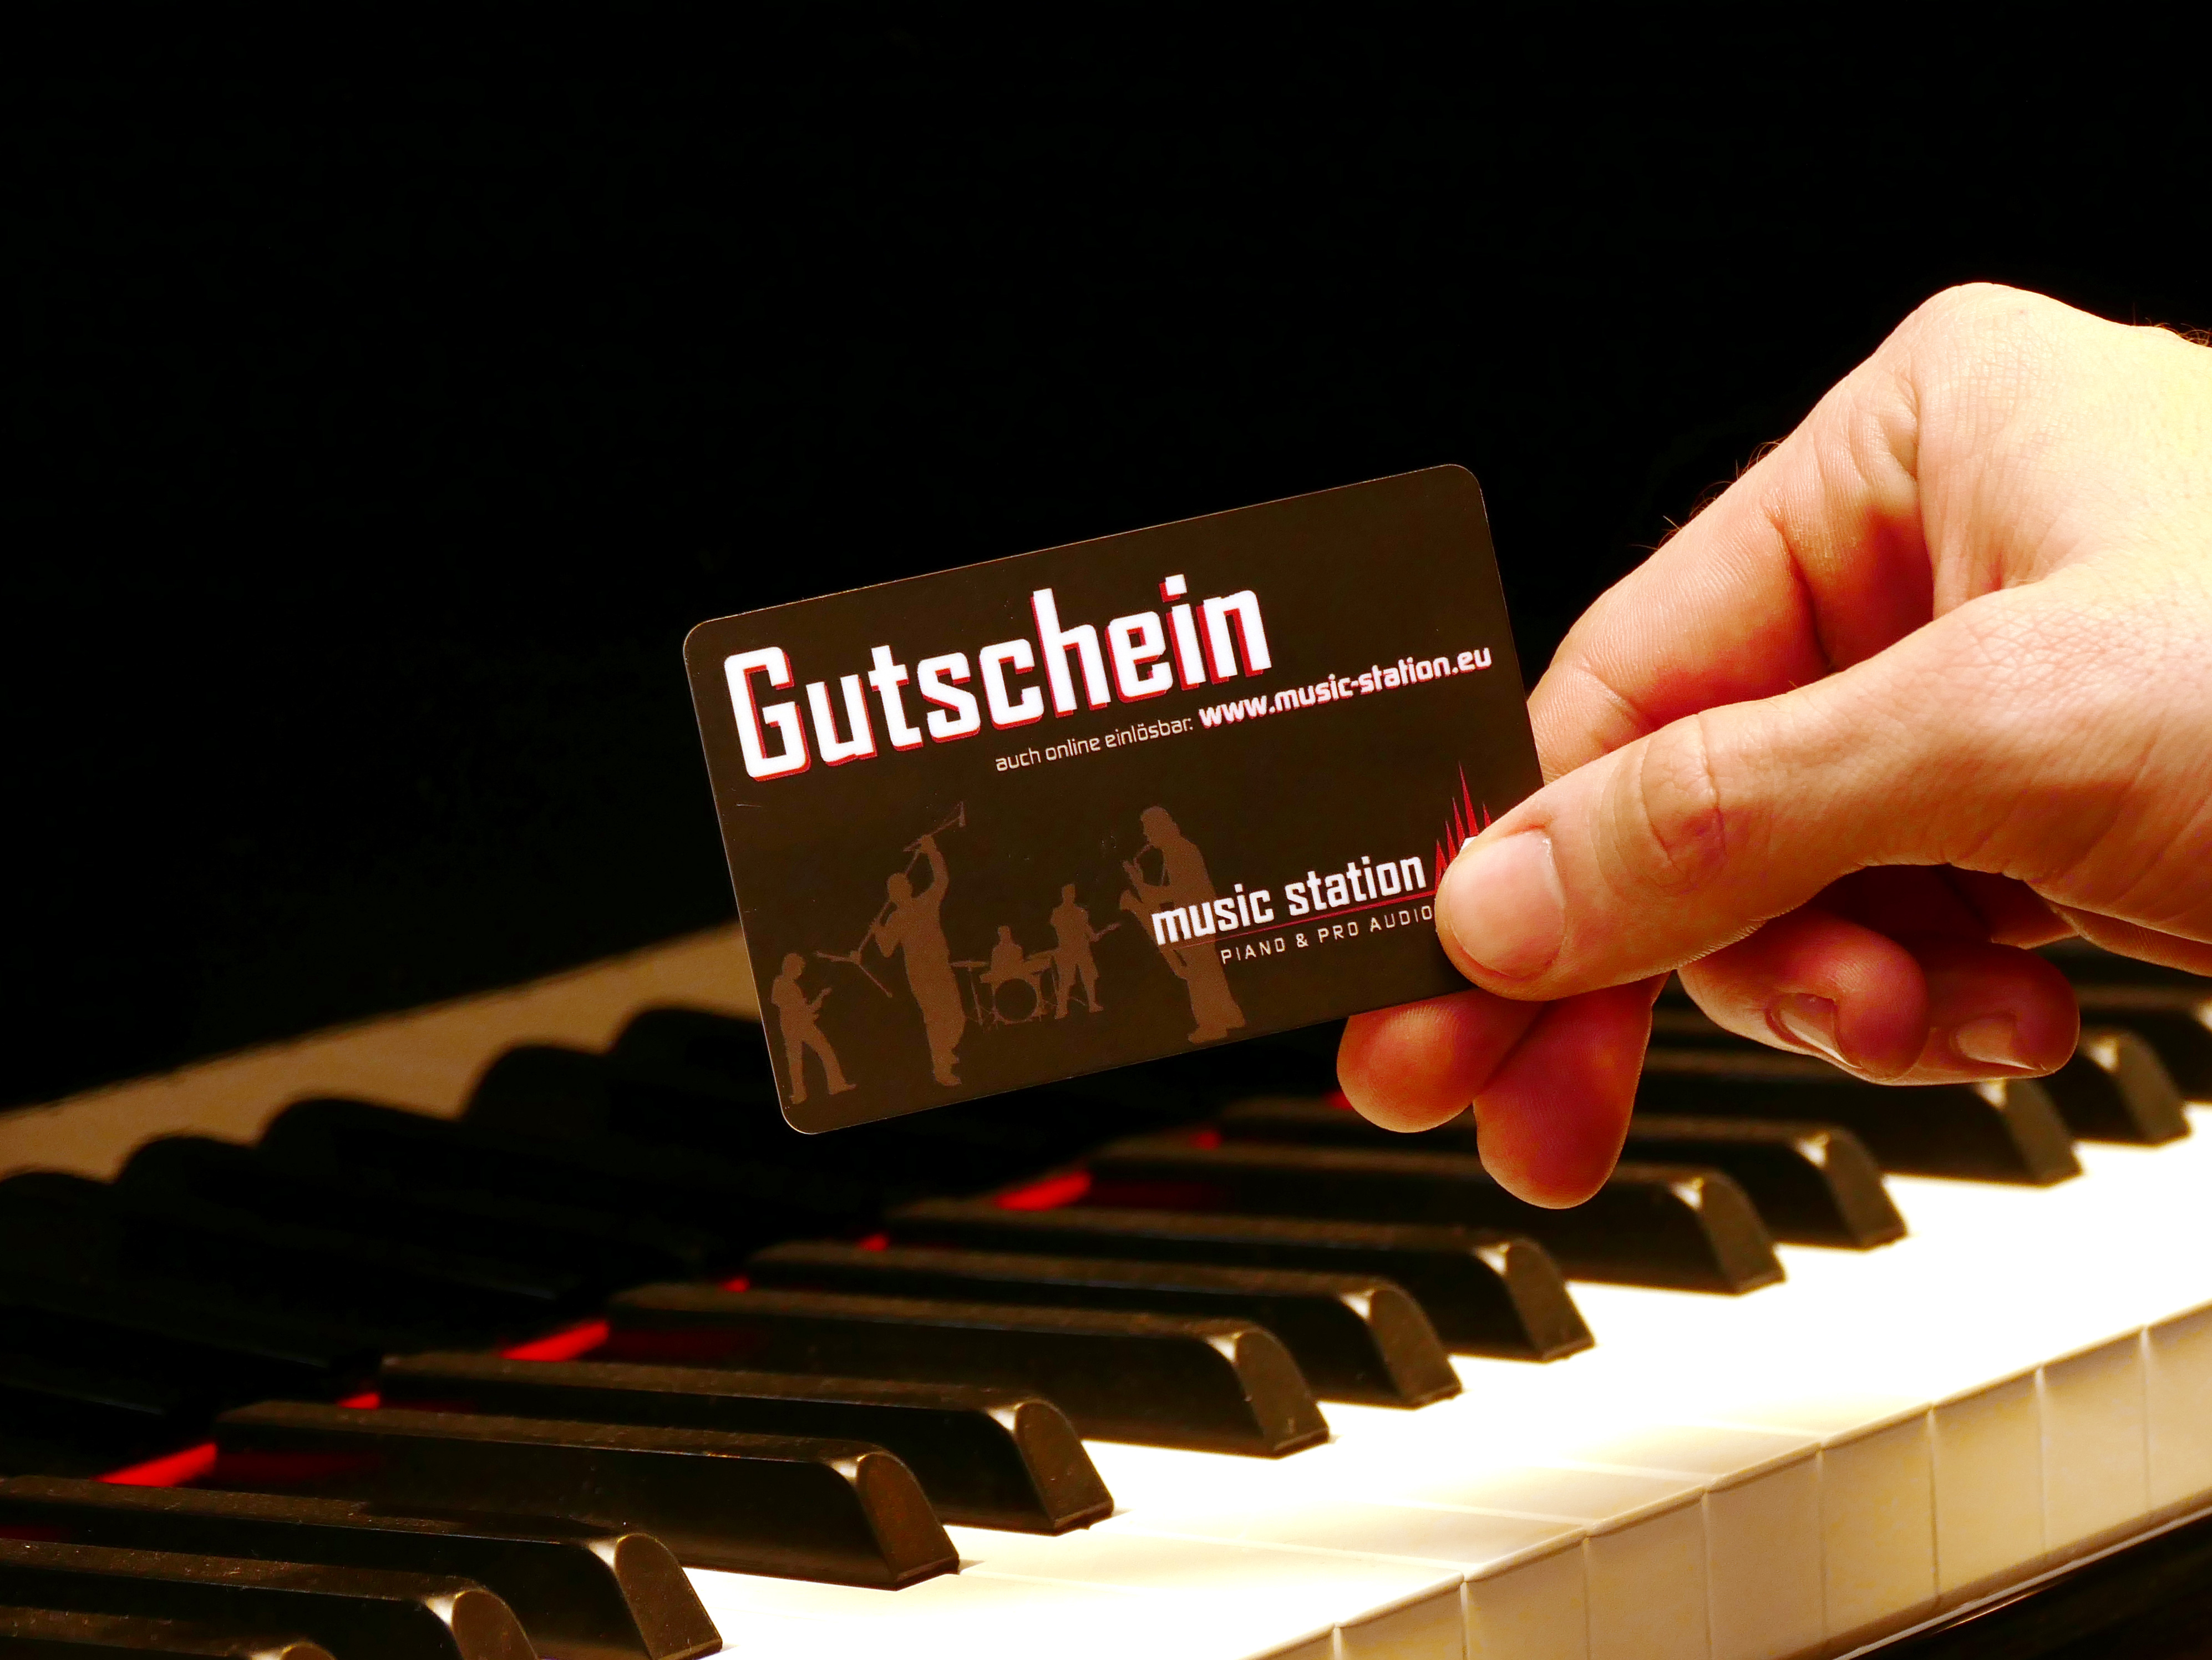 Music Station Gutschein 250 Euro